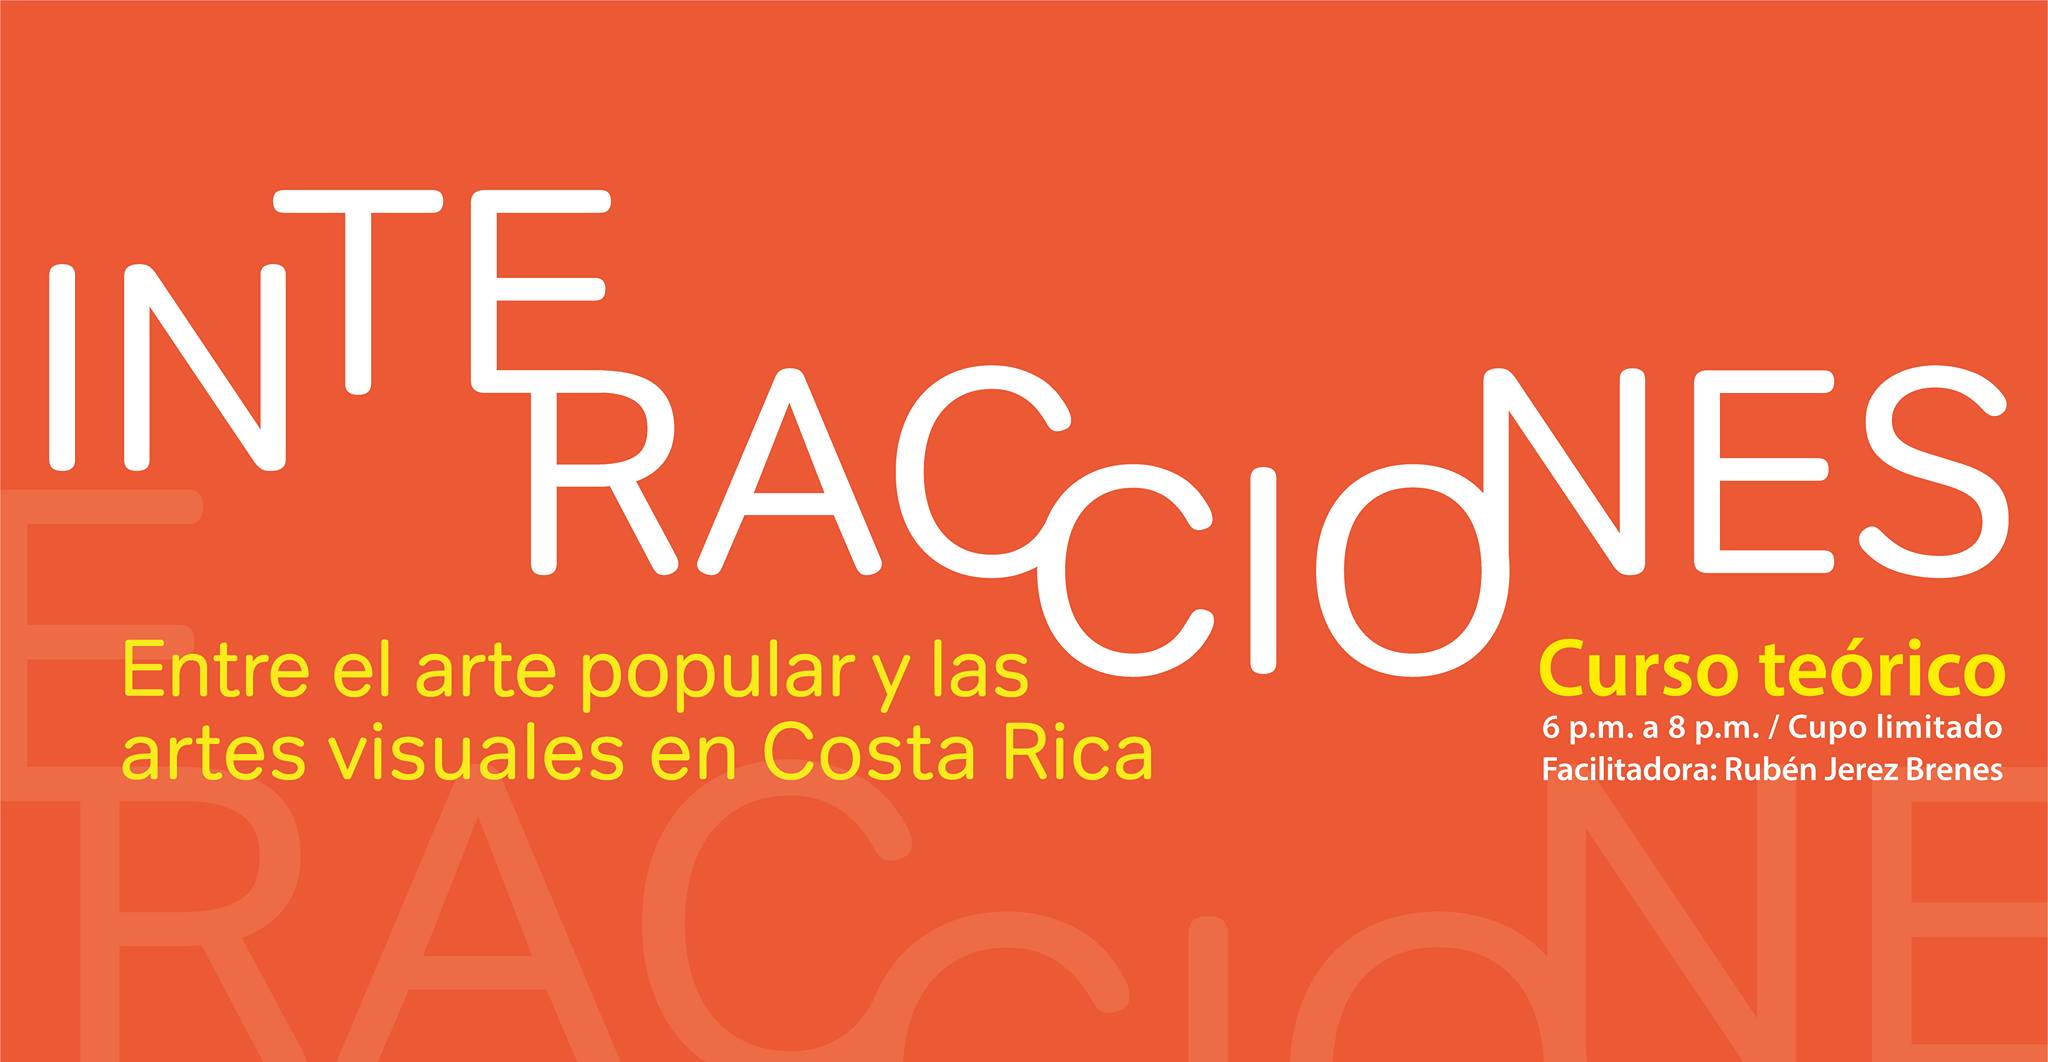 Interacciones entre el arte popular y las artes visuales en Costa Rica